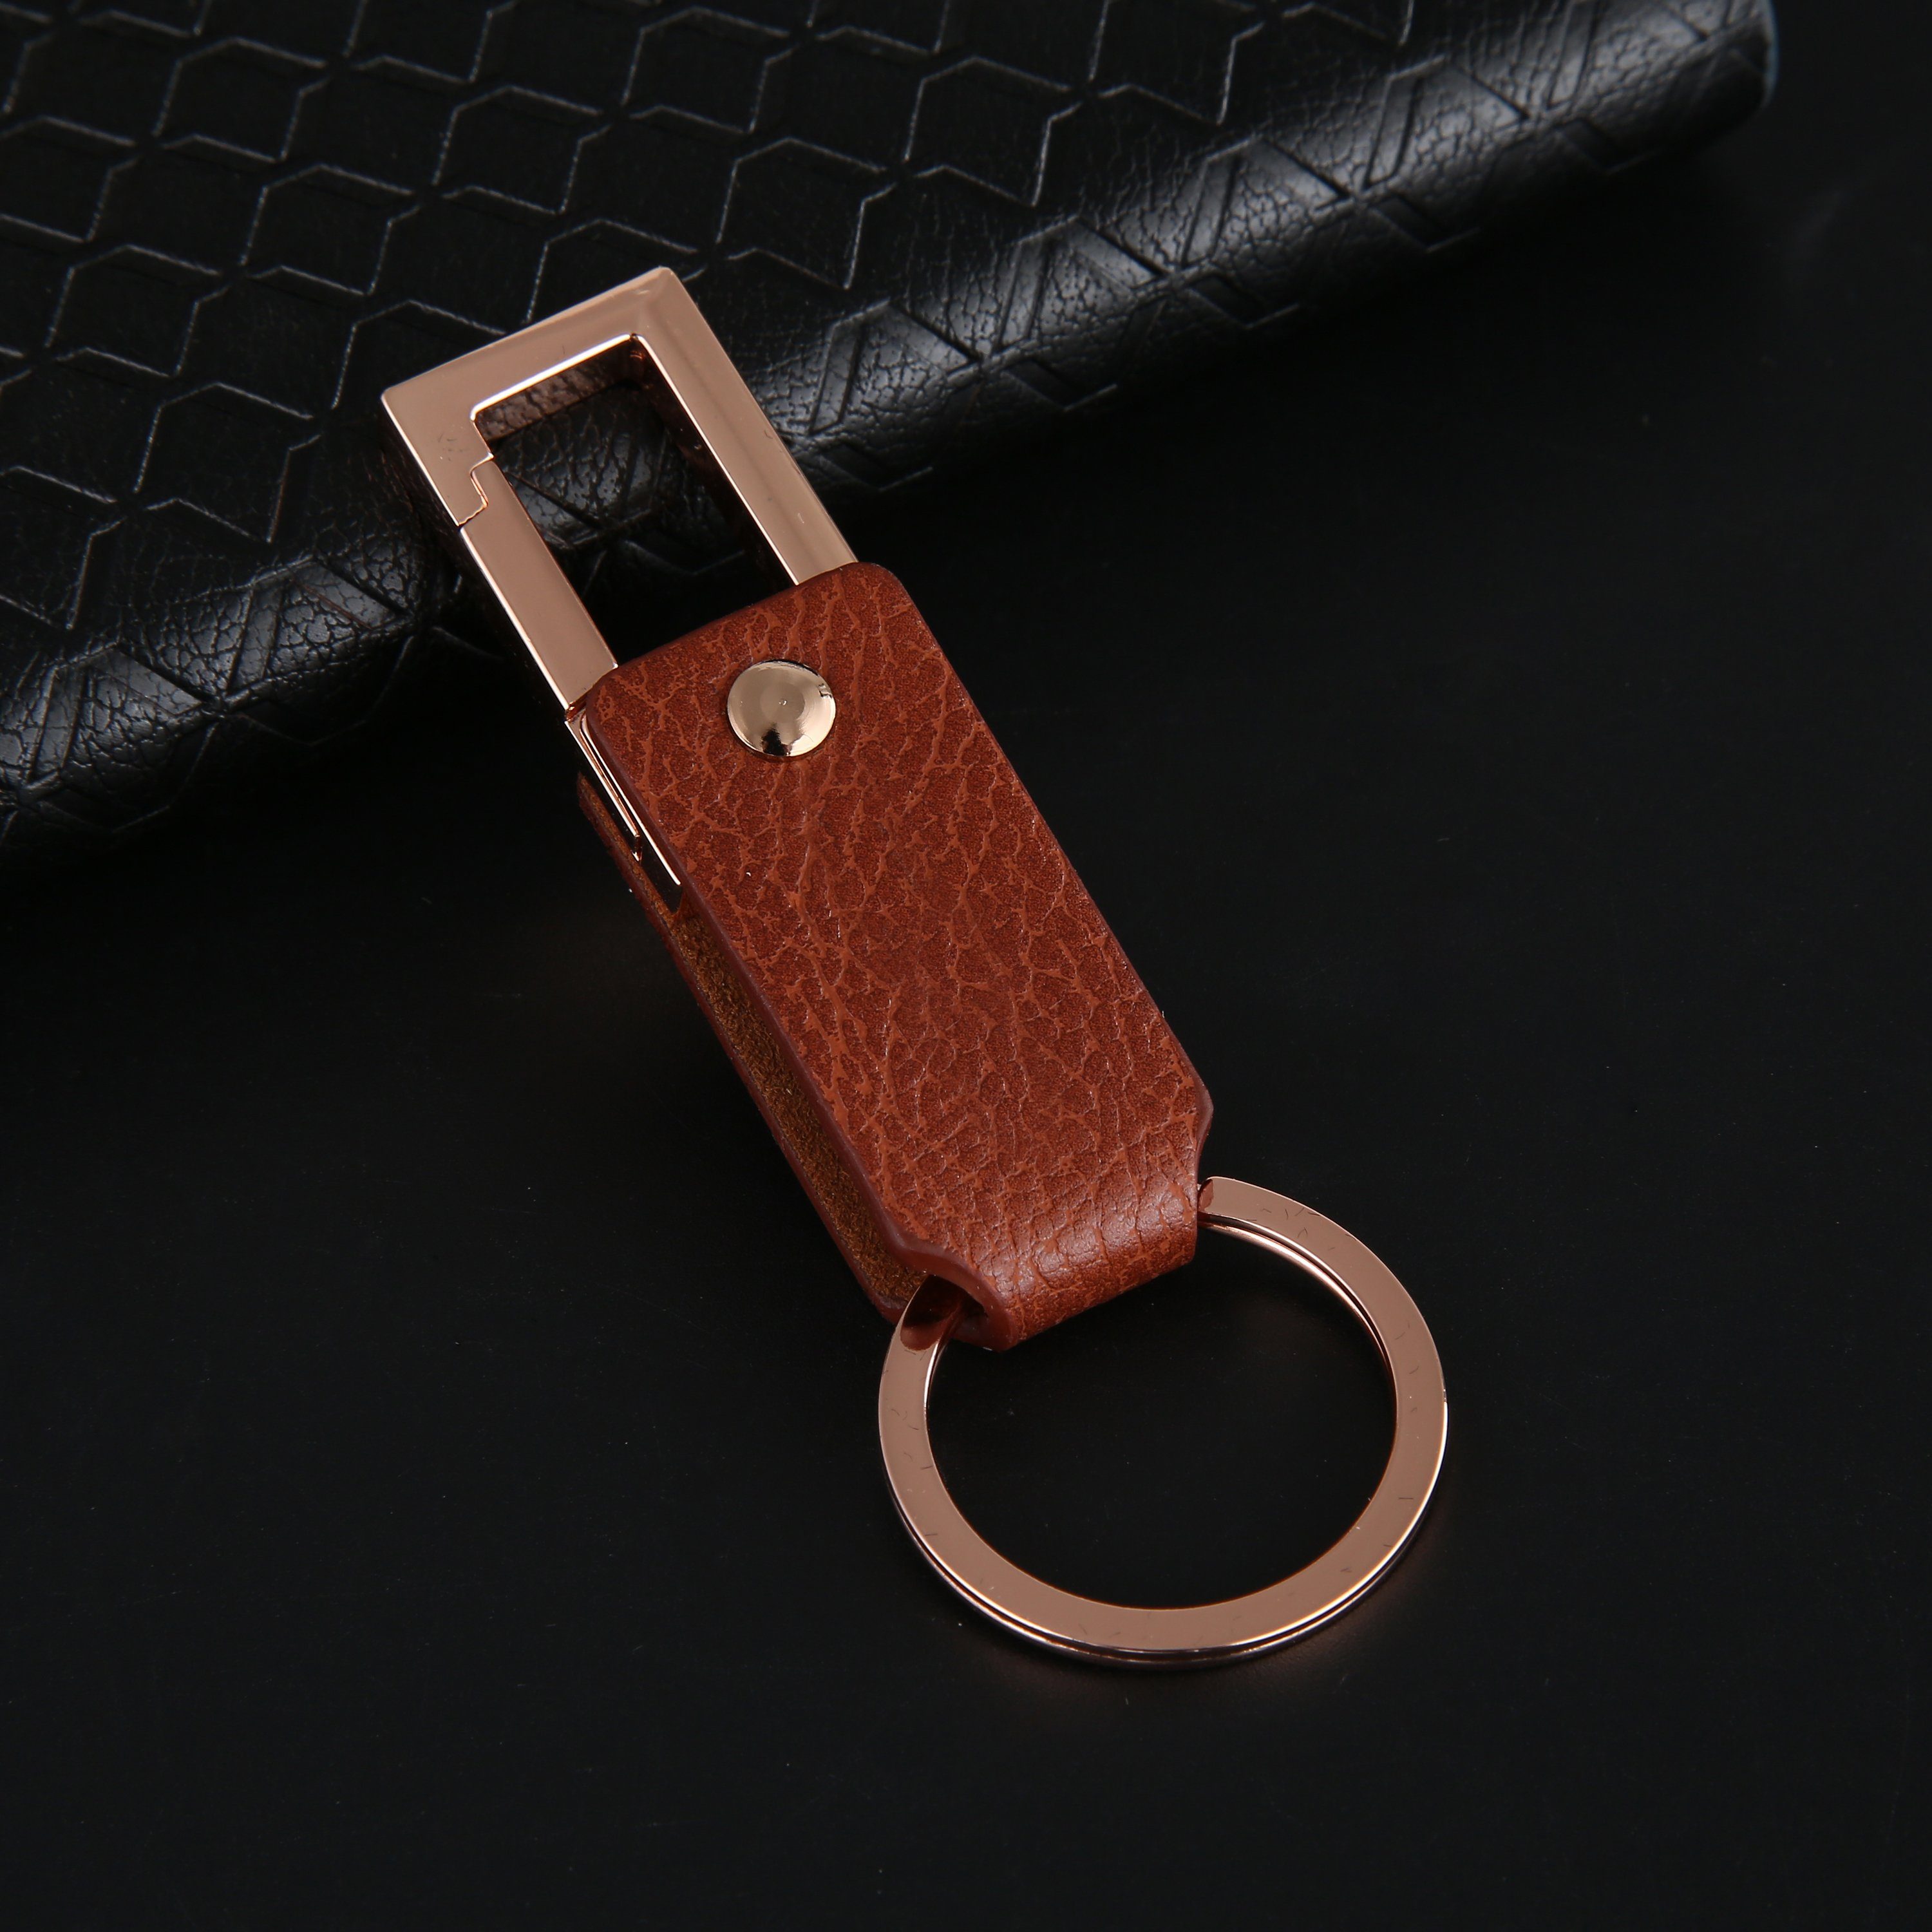 Schlüsselband und Cerbery Schlüsselring, mit Auto Kunstleder Schlüsselanhänger Schlüsselanhänger Geschenkbox Schlüsselhalter aus Geschenk Gold Ringen Leder - Schlüsselbund